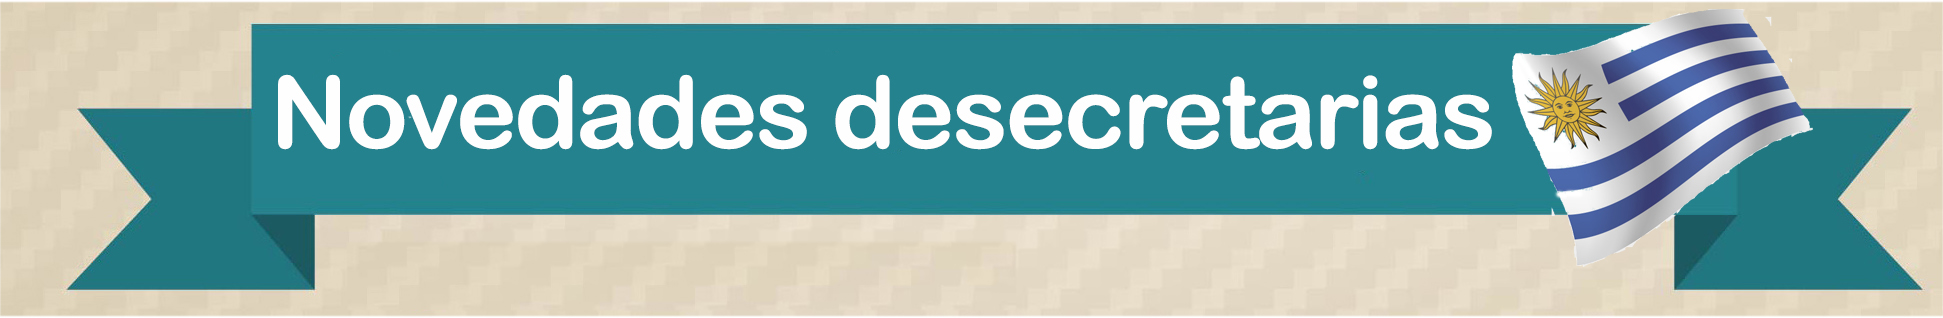 novedades-desecretarias-uruguay-cabecera